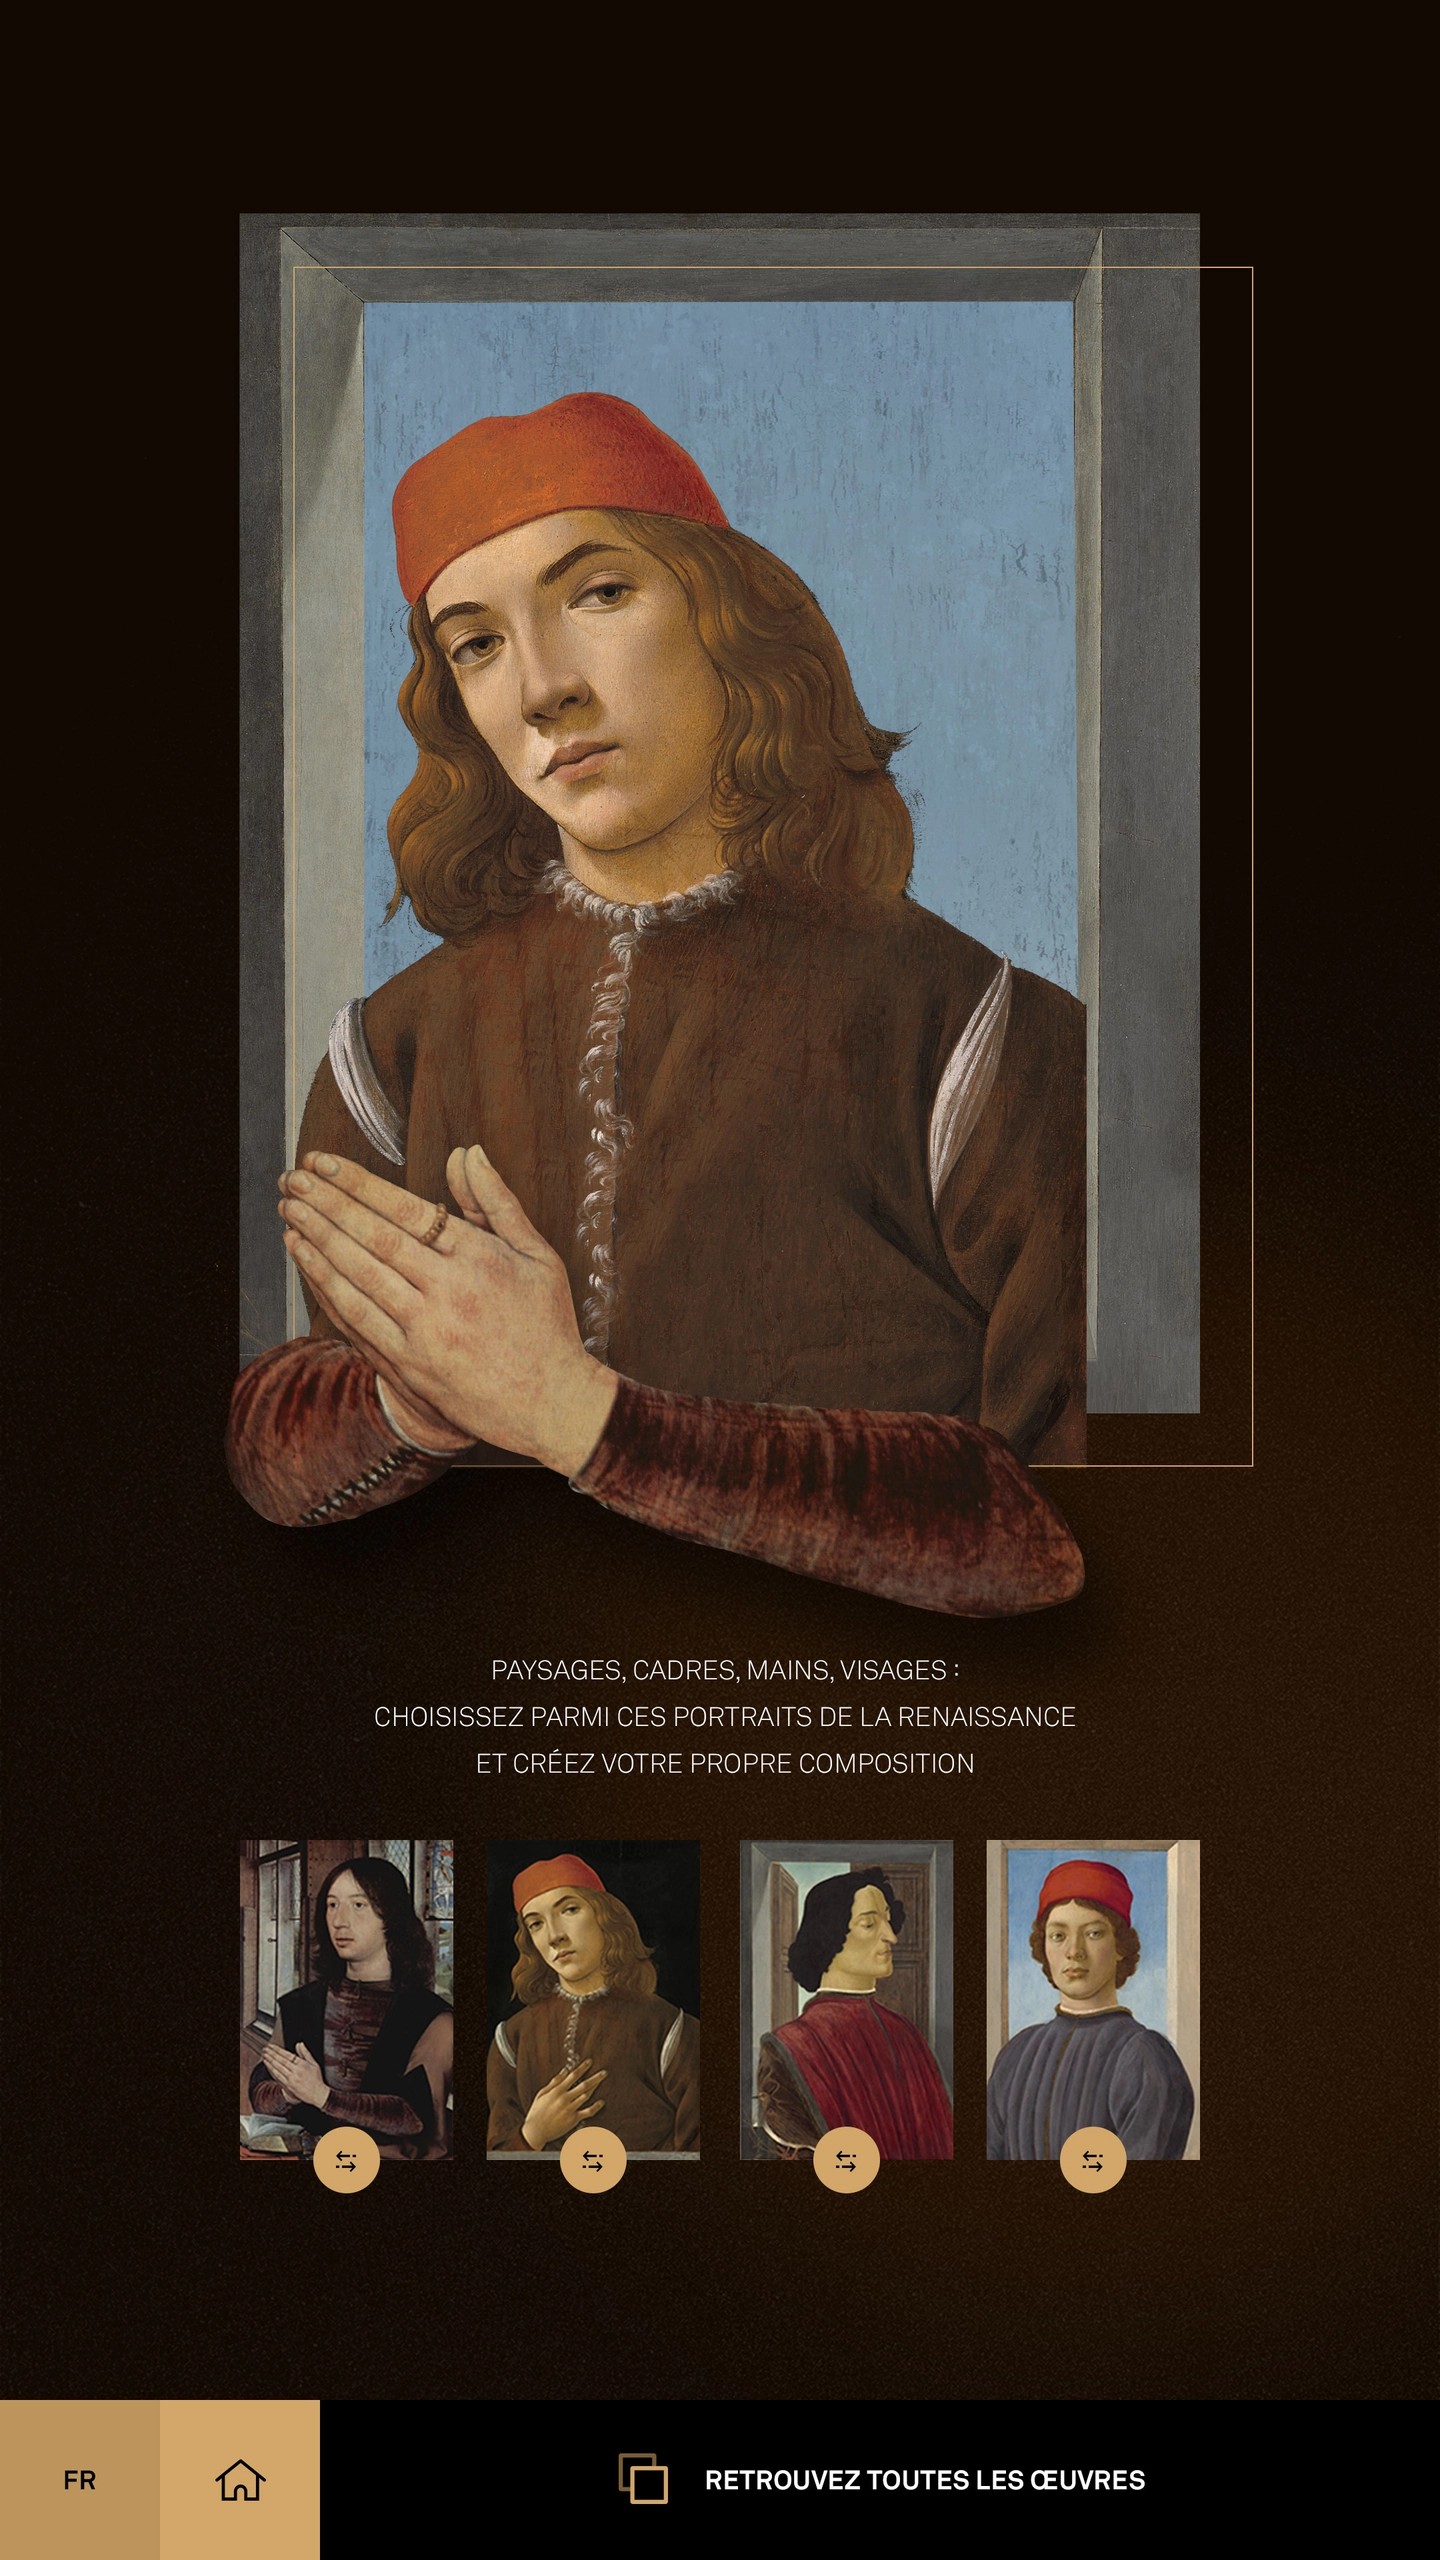 The portrait in the Renaissance